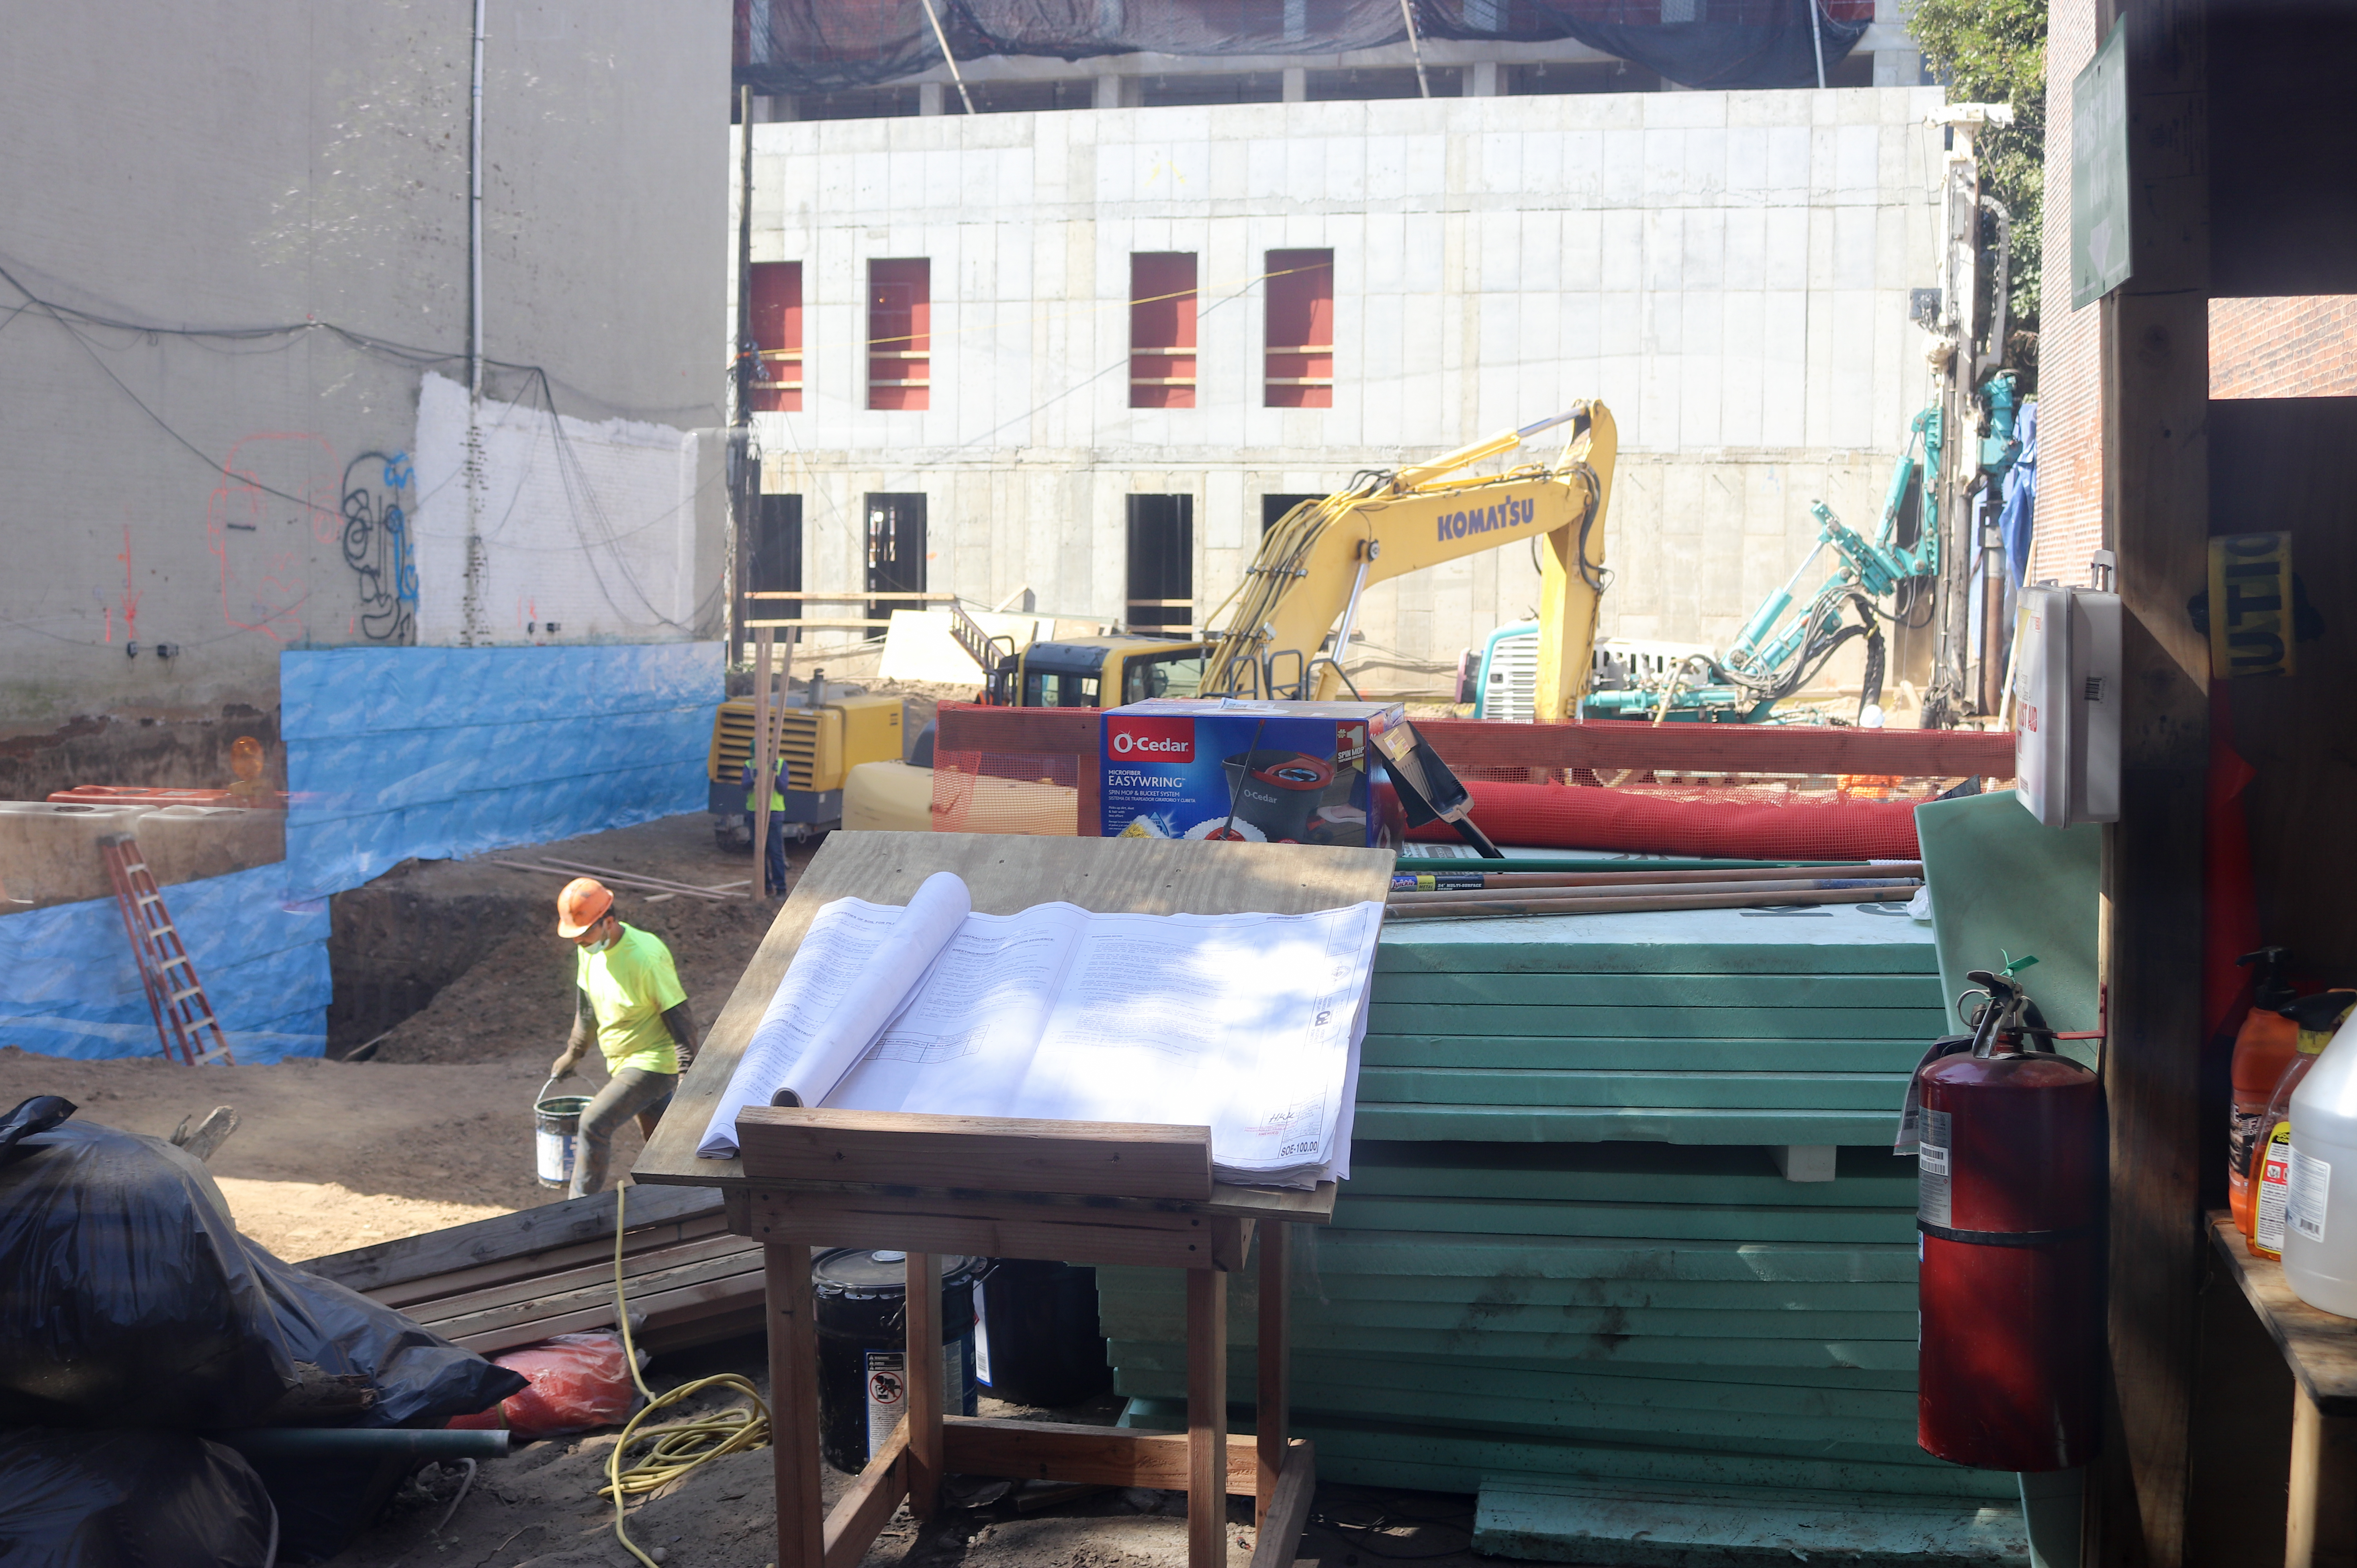 construction site at 532 clinton avenue